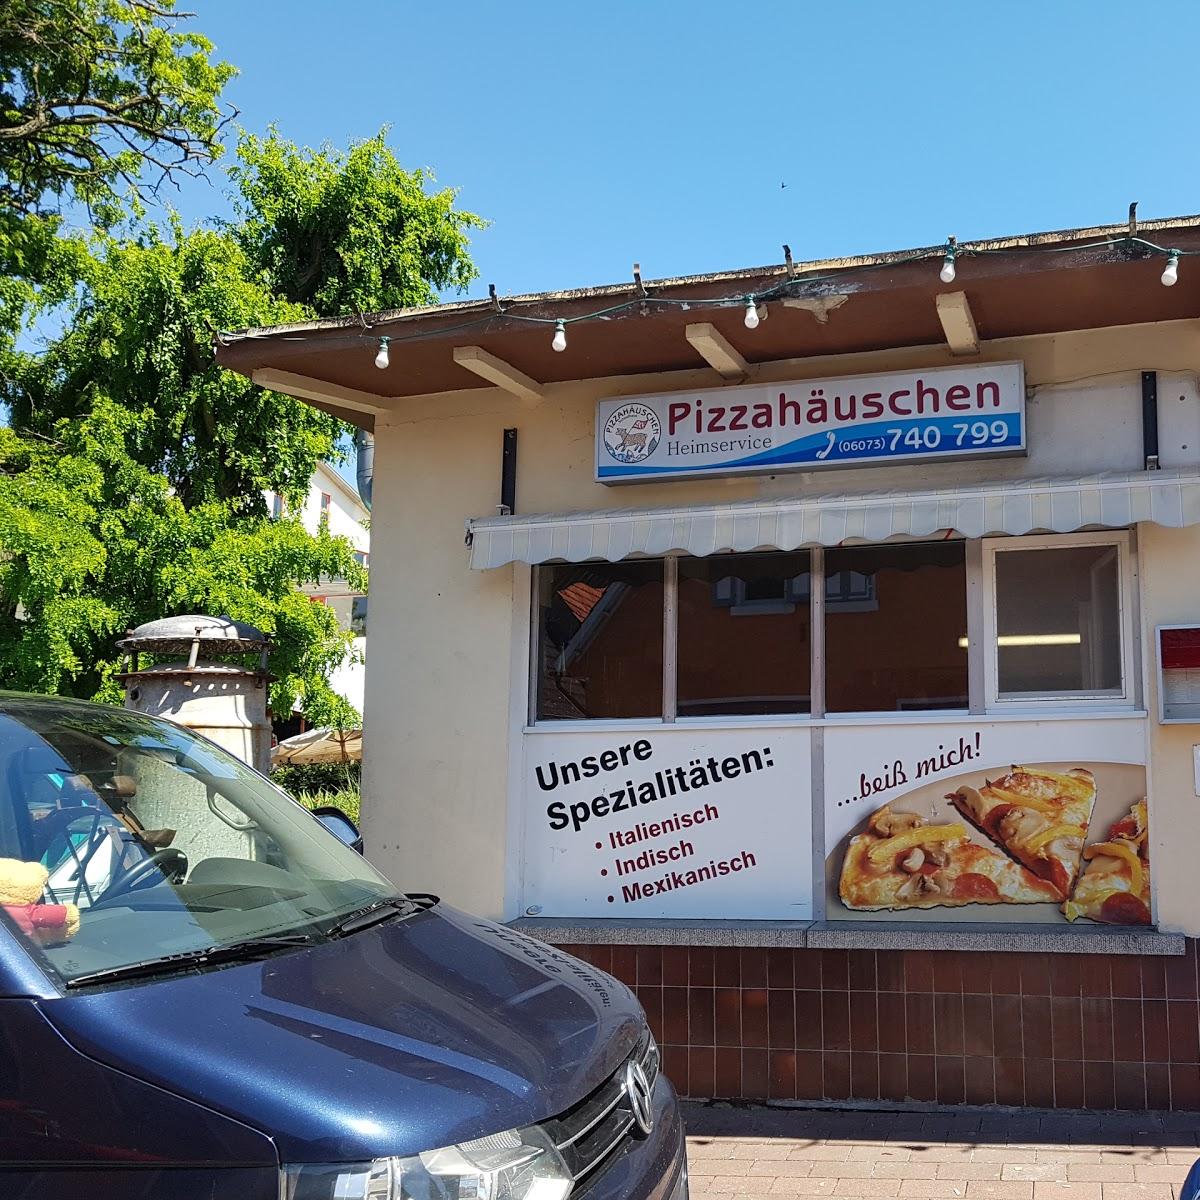 Restaurant "Pizzahäuschen" in Schaafheim